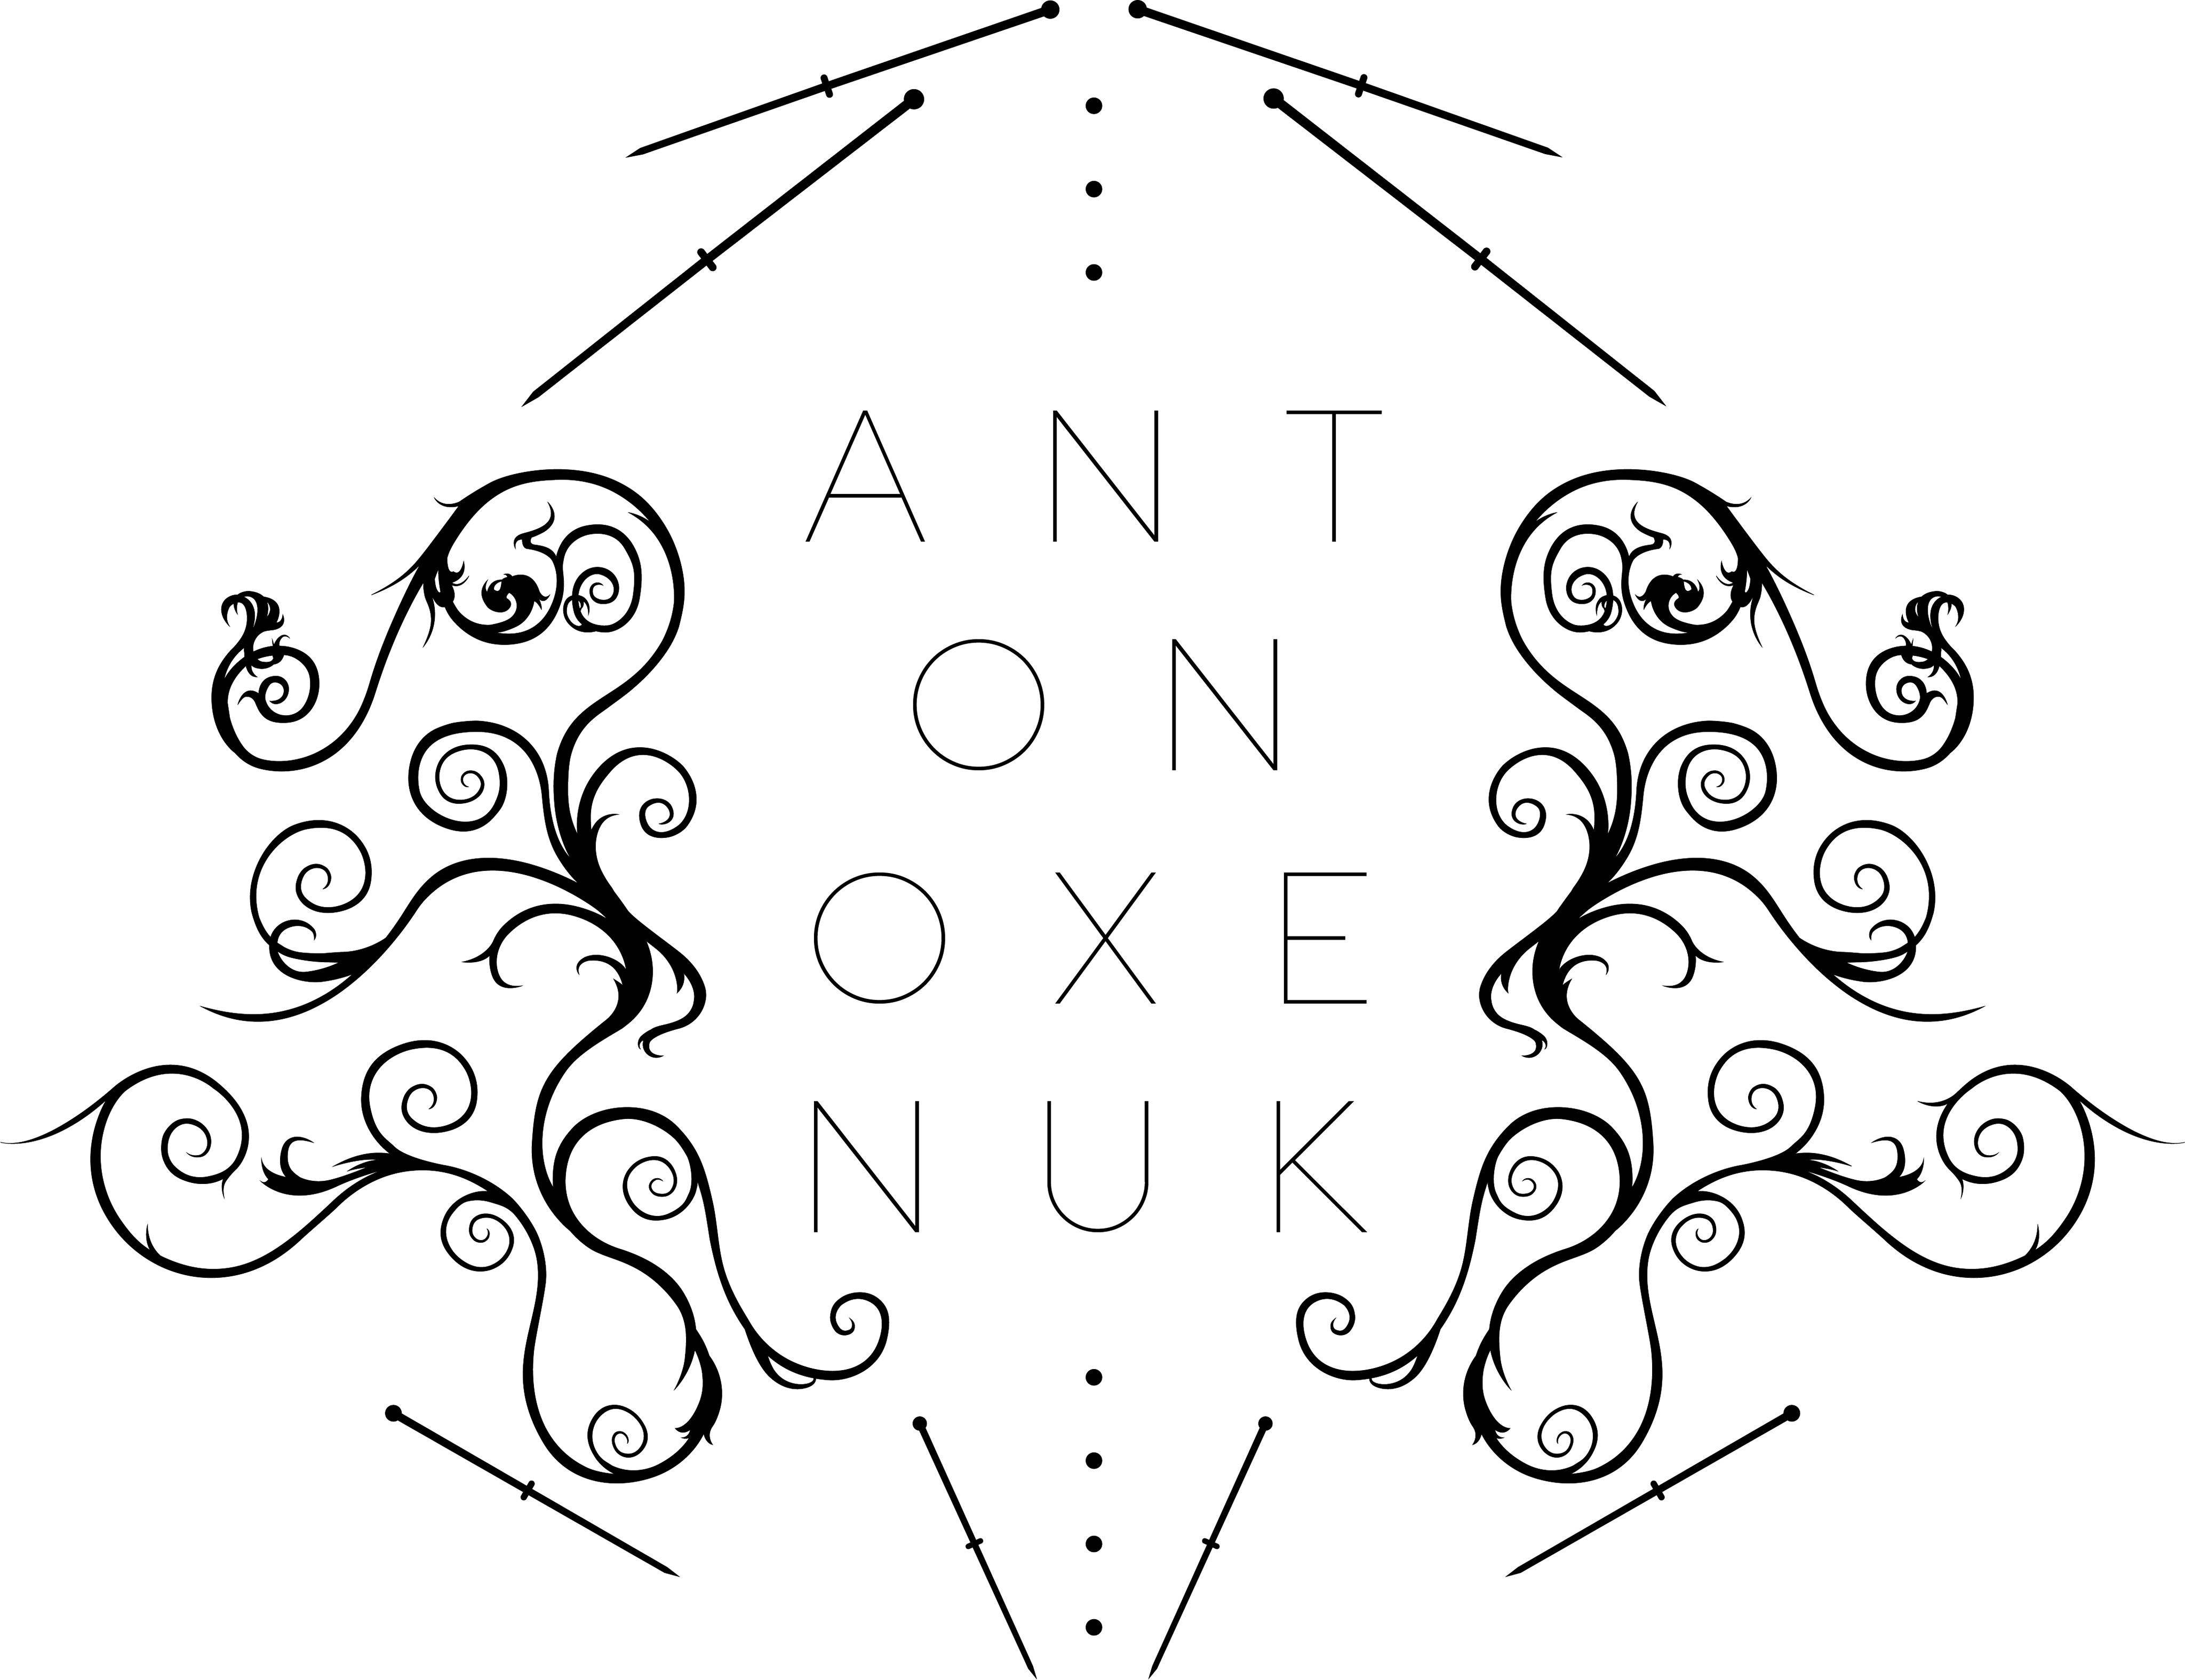 Anton Oxenuk